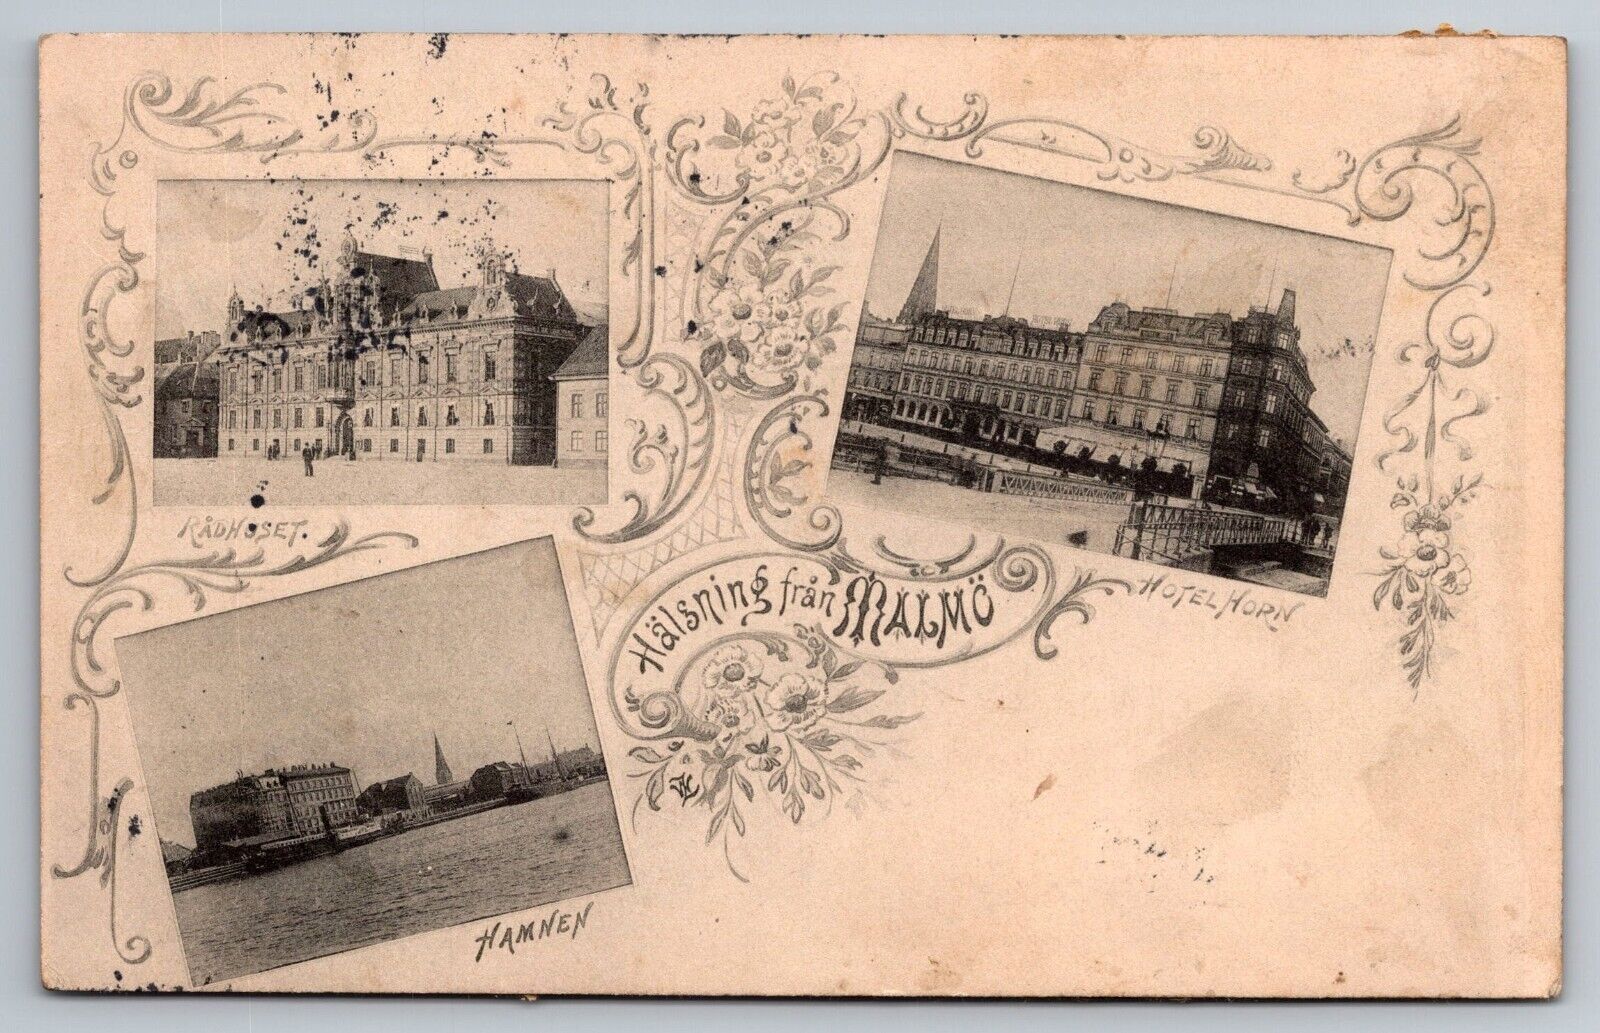 Malmo Sweden Vintage Postcard. Hotel Horn, Raduset, Hamnen. 1900s